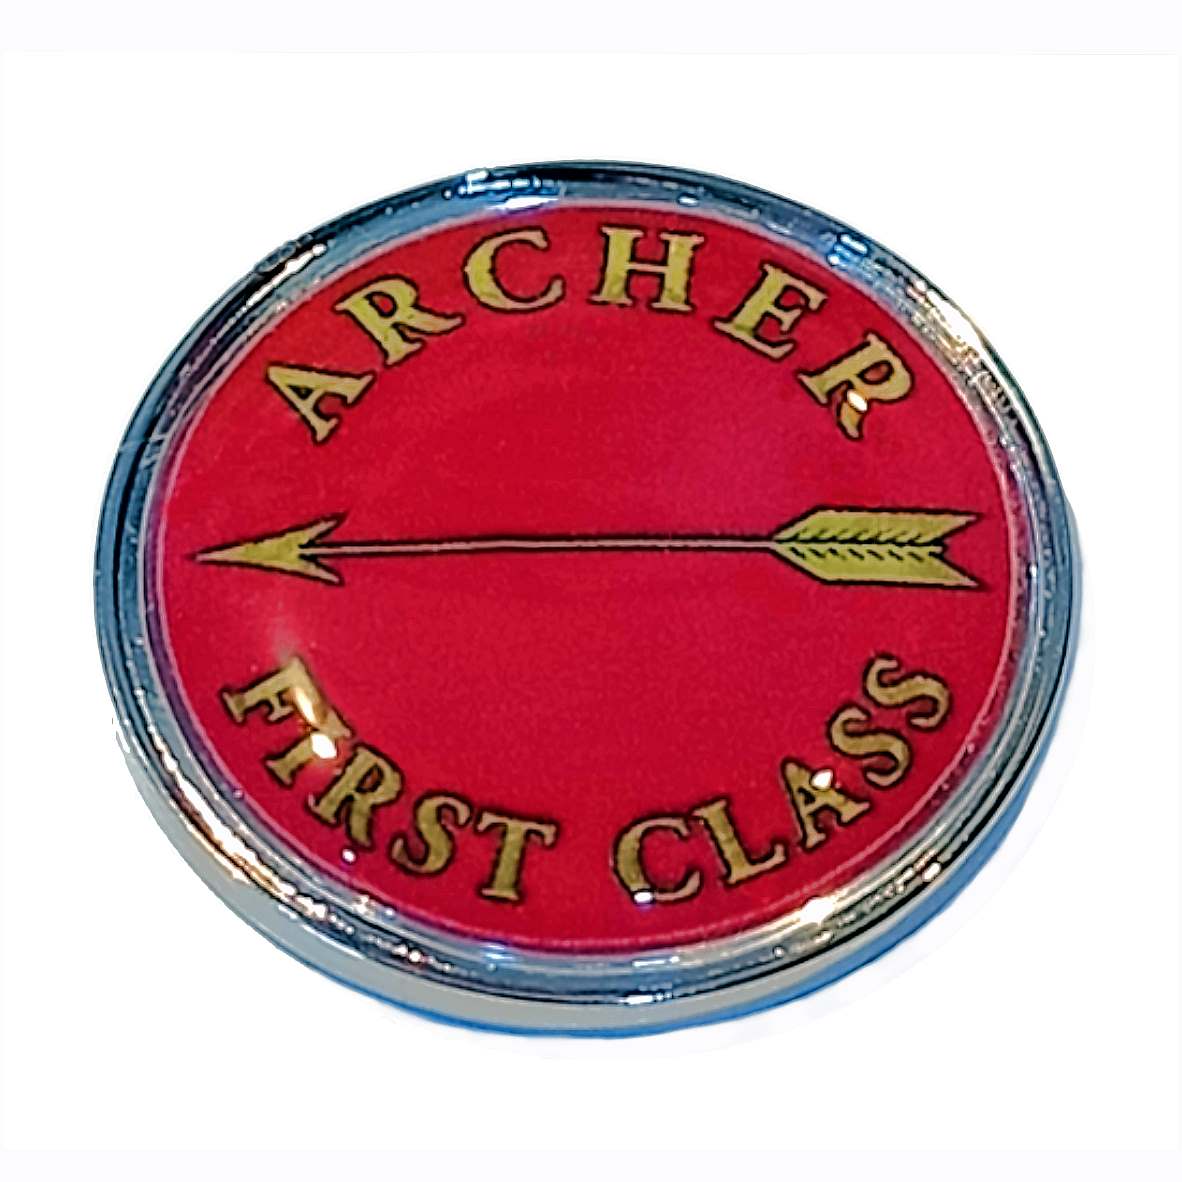 Archer Class standard round badge